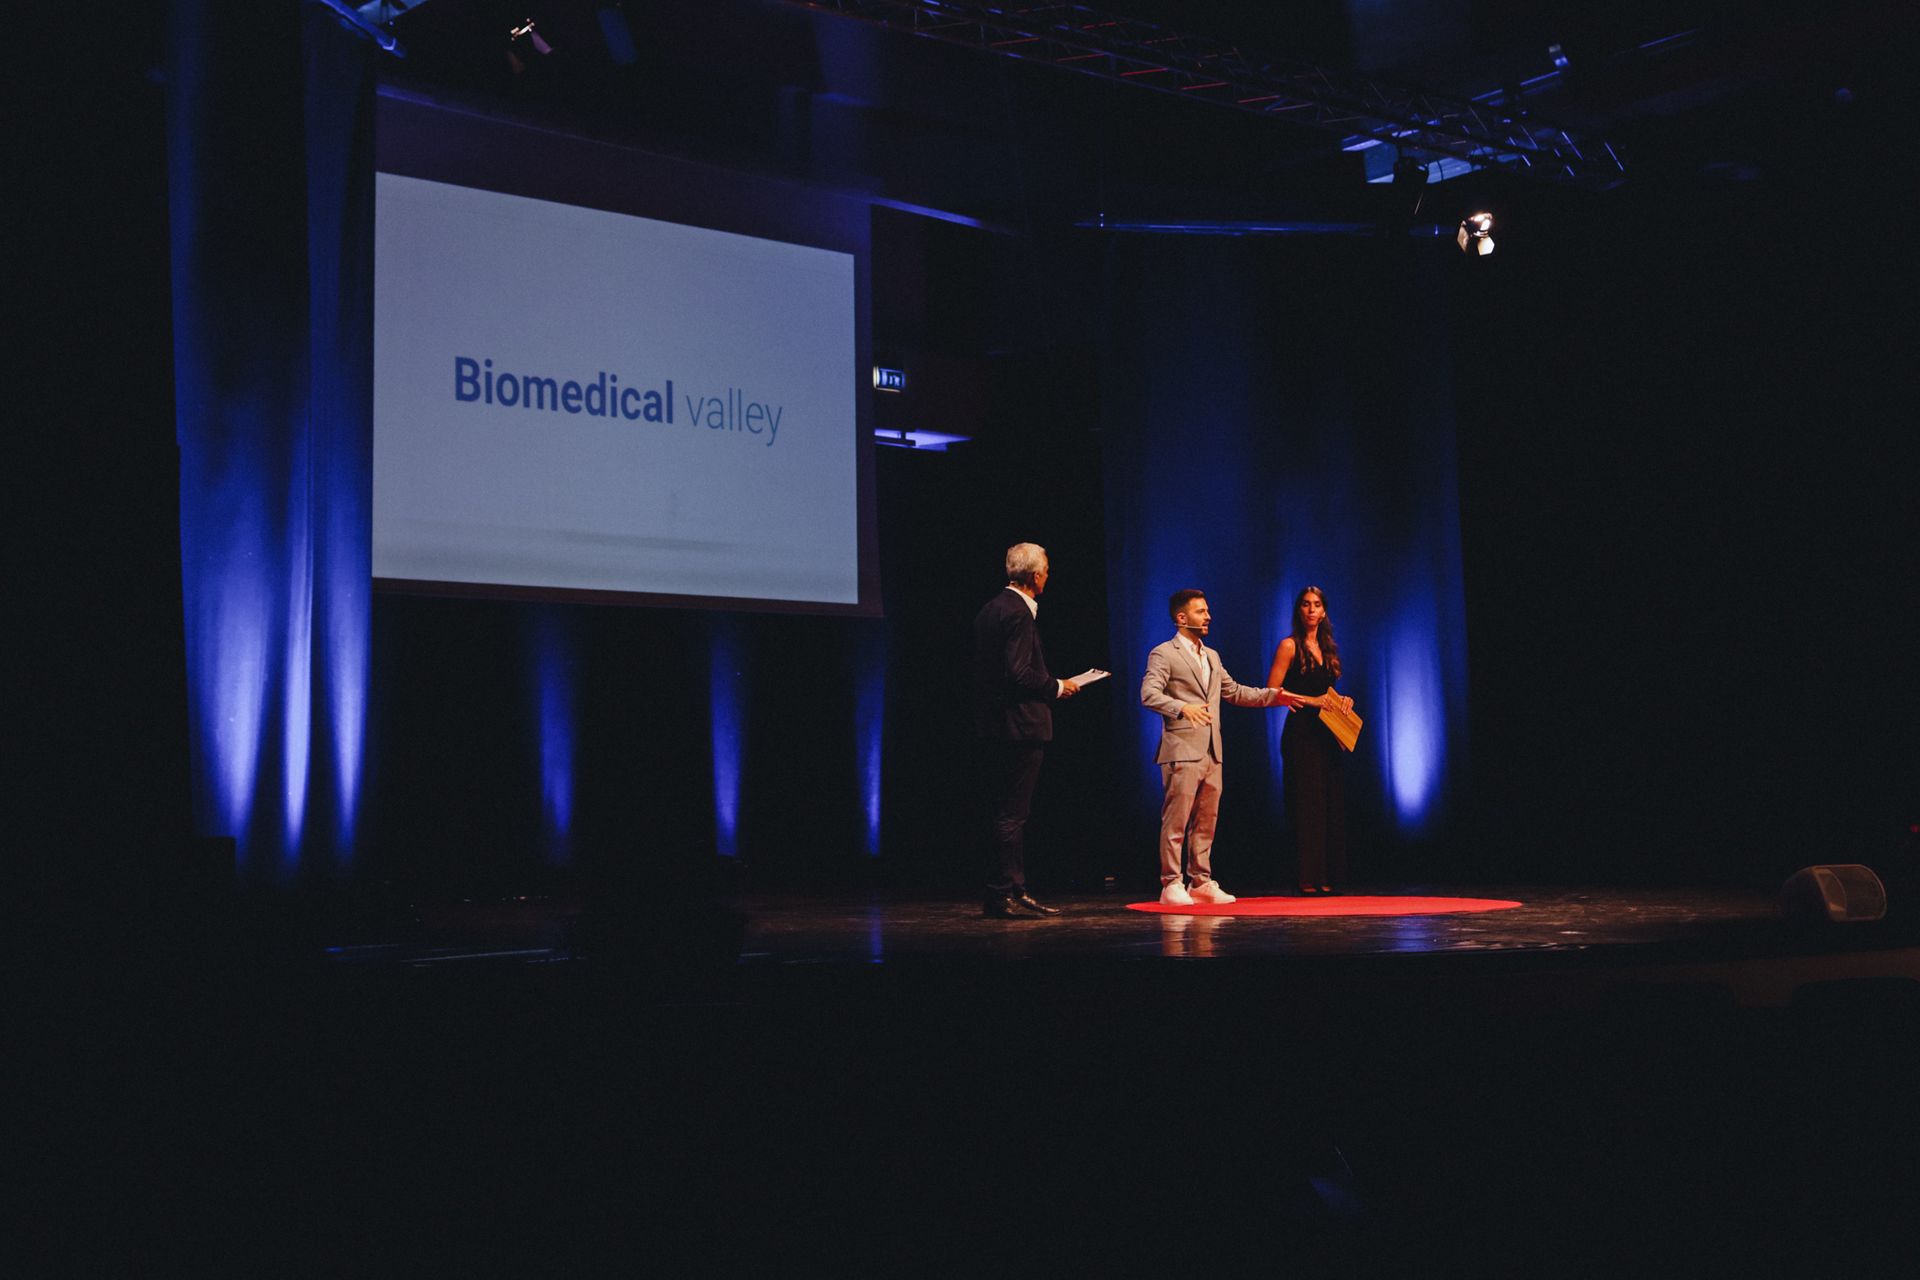 Matteo Stefanini, organizzatore del workshop “Biomedical Valley”, fra i due presentatori dell’edizione 2021 dell’evento mirandolese, Guido Zaccarelli e Samantha Taglini